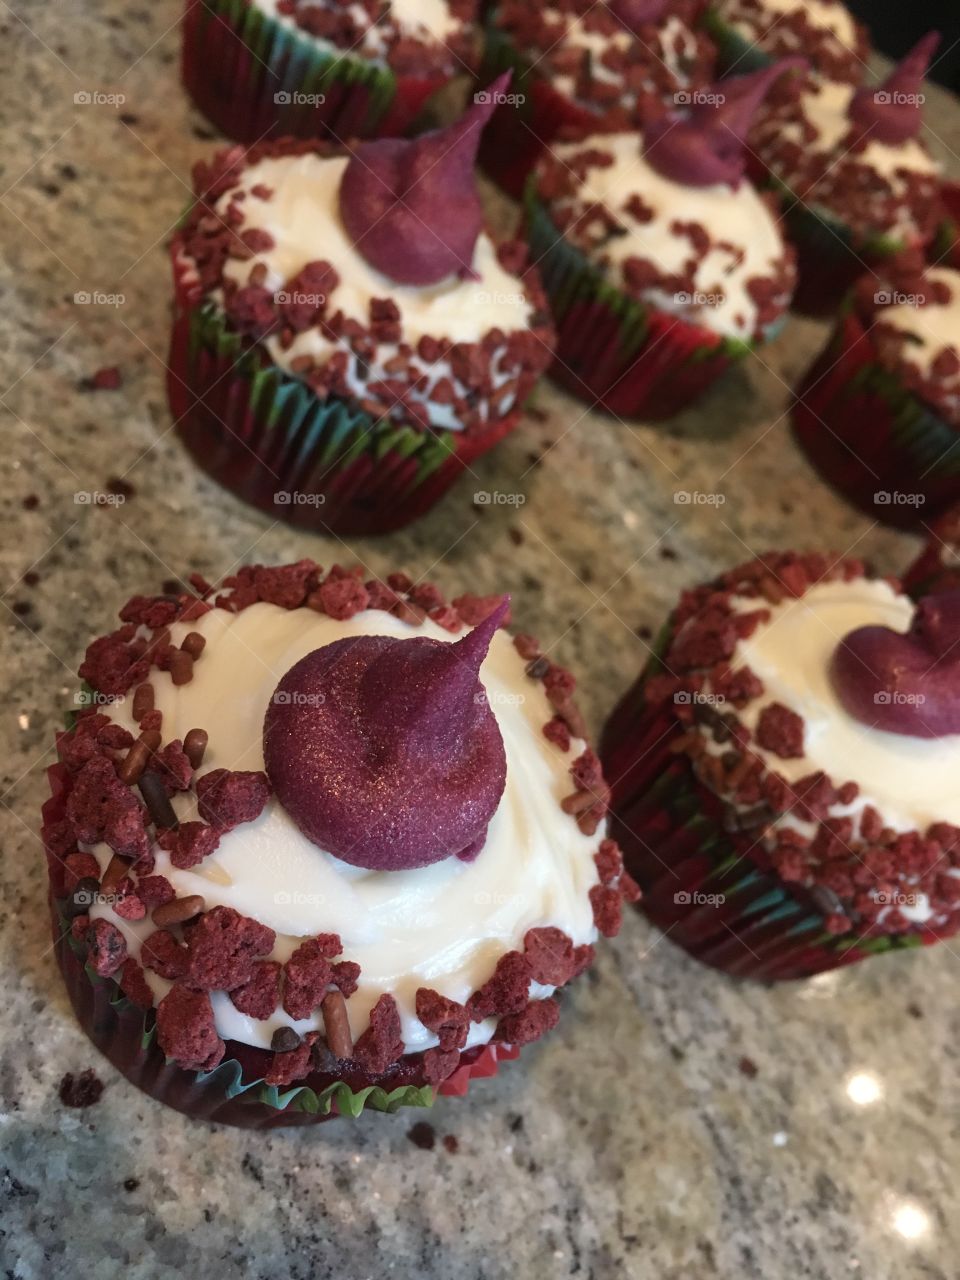 Red velvet
Diva cupcakes 